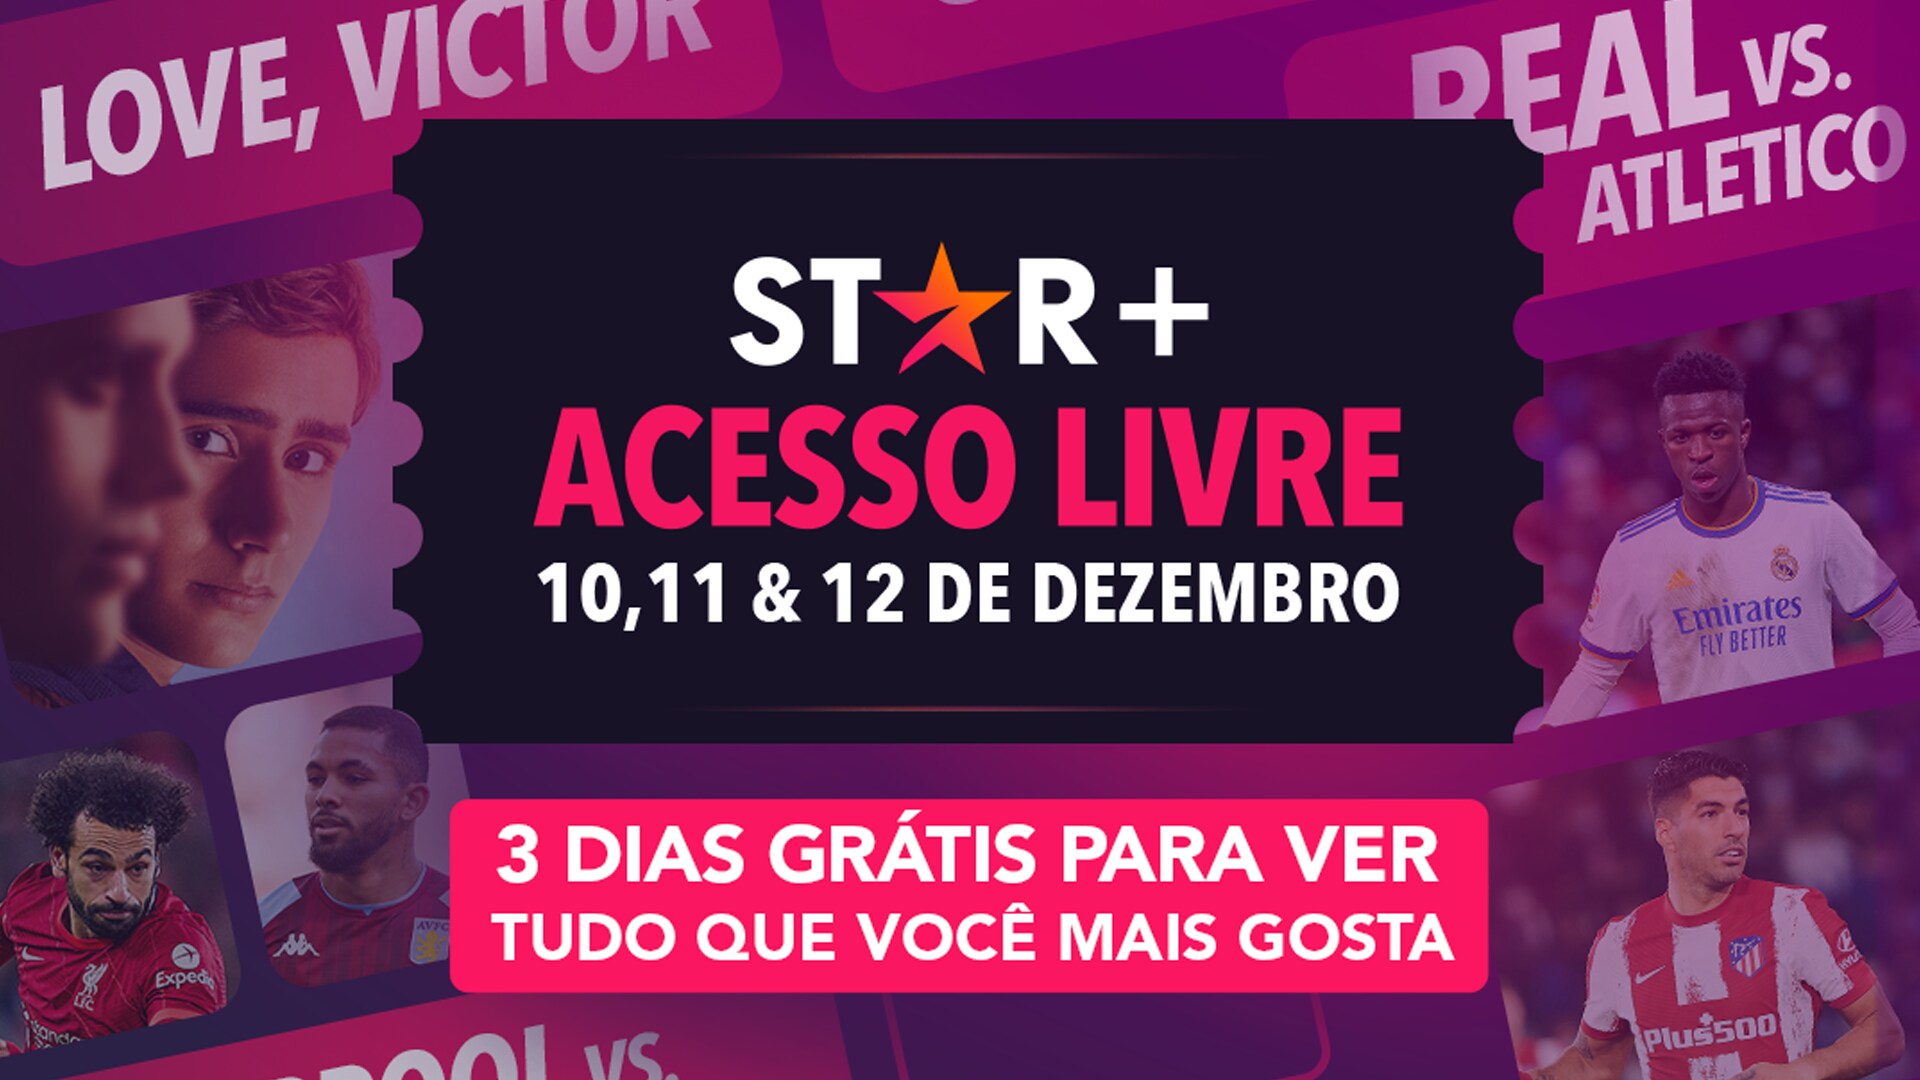 Star+ Acesso Livre: uma oportunidade única de acesso gratuito ao Star+